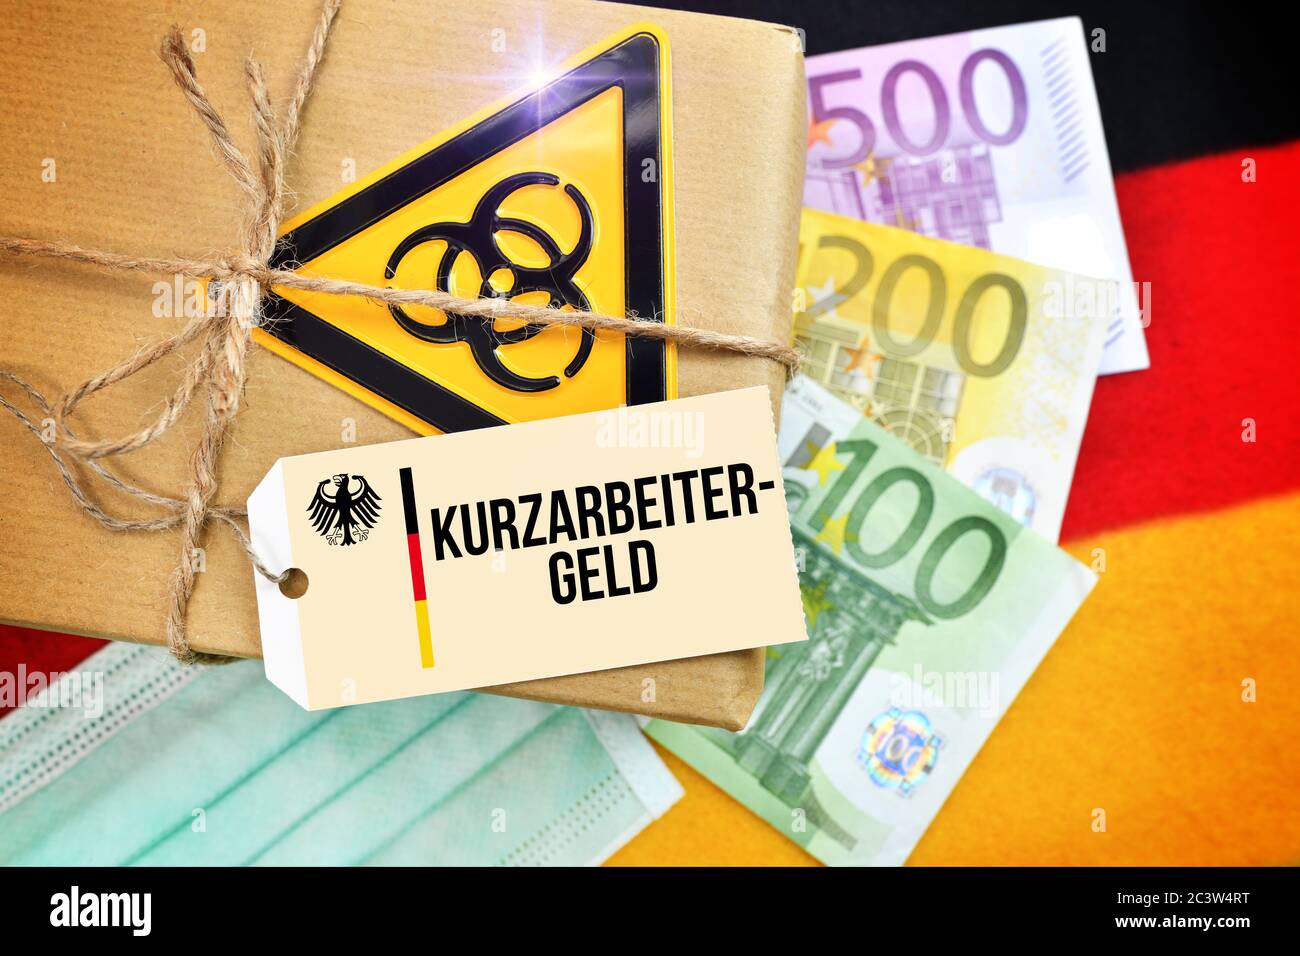 PHOTOMONTAGE, paquet Biogefährdungszeichen sur le drapeau allemand avec tag et le label Kurzarbeitergeld, FOTOMONTAGE, Paket mit Biogefährdungszeichen auf Banque D'Images